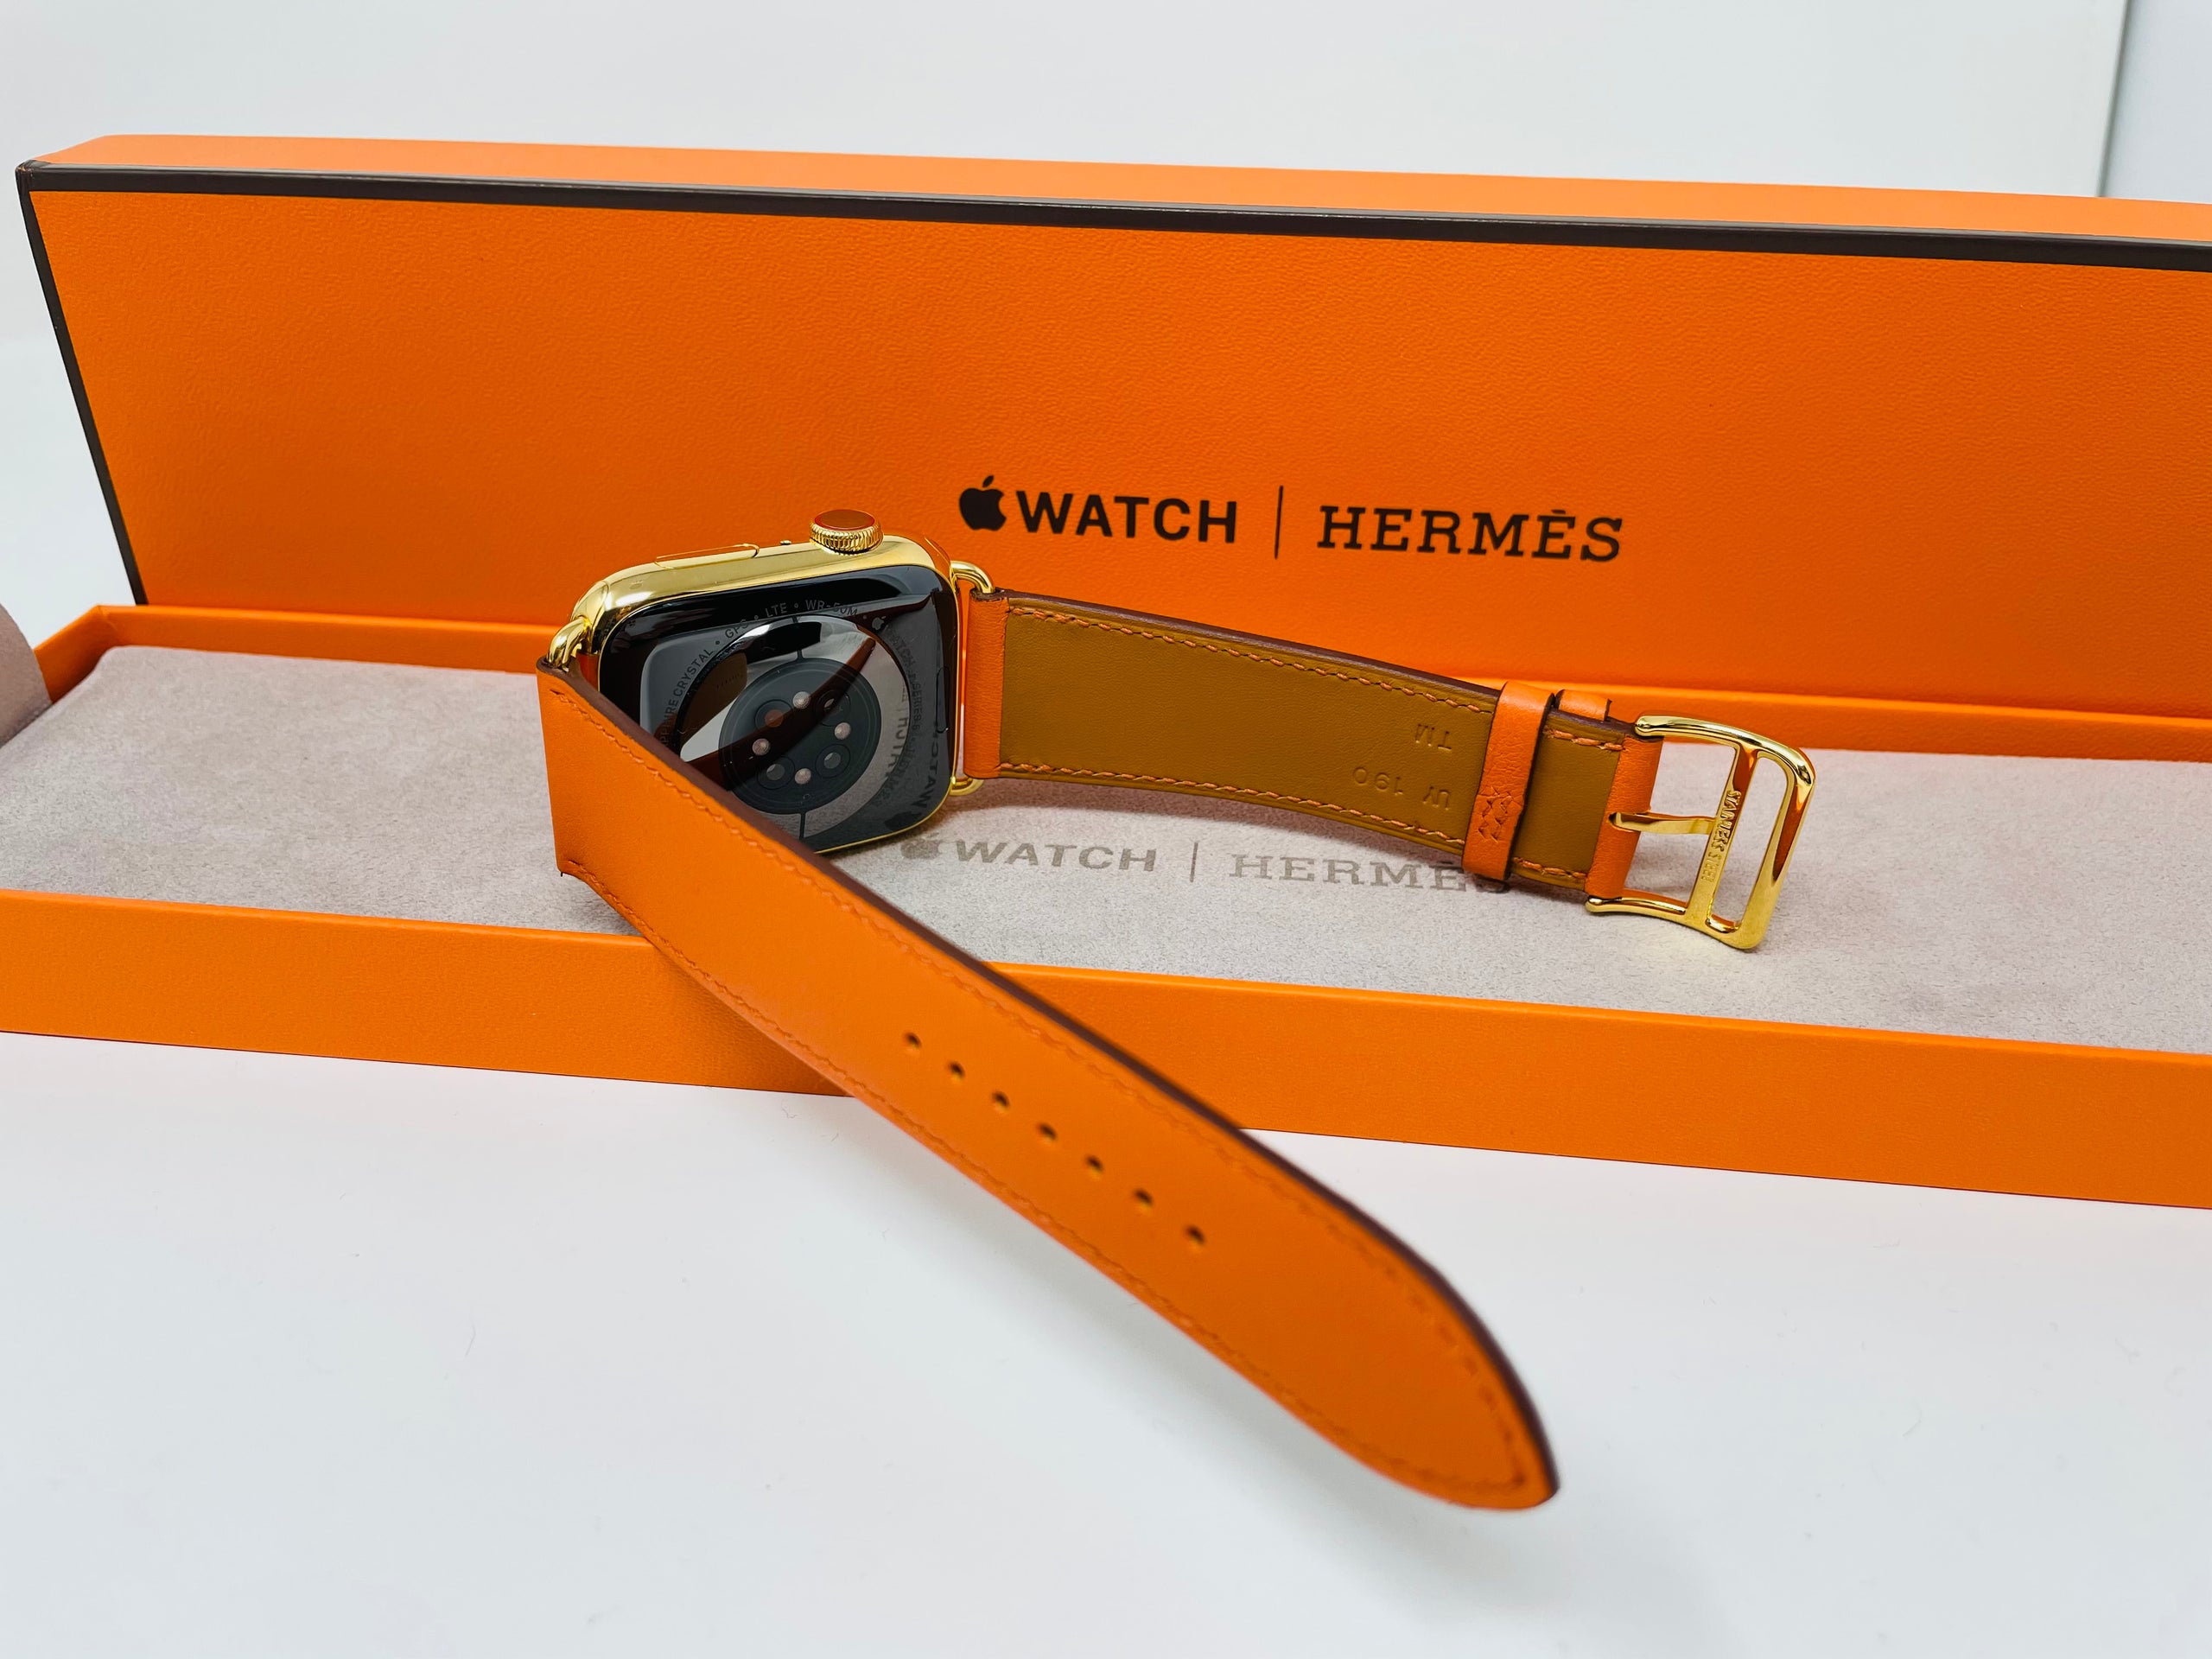 Apple Watch Hermès Packaging